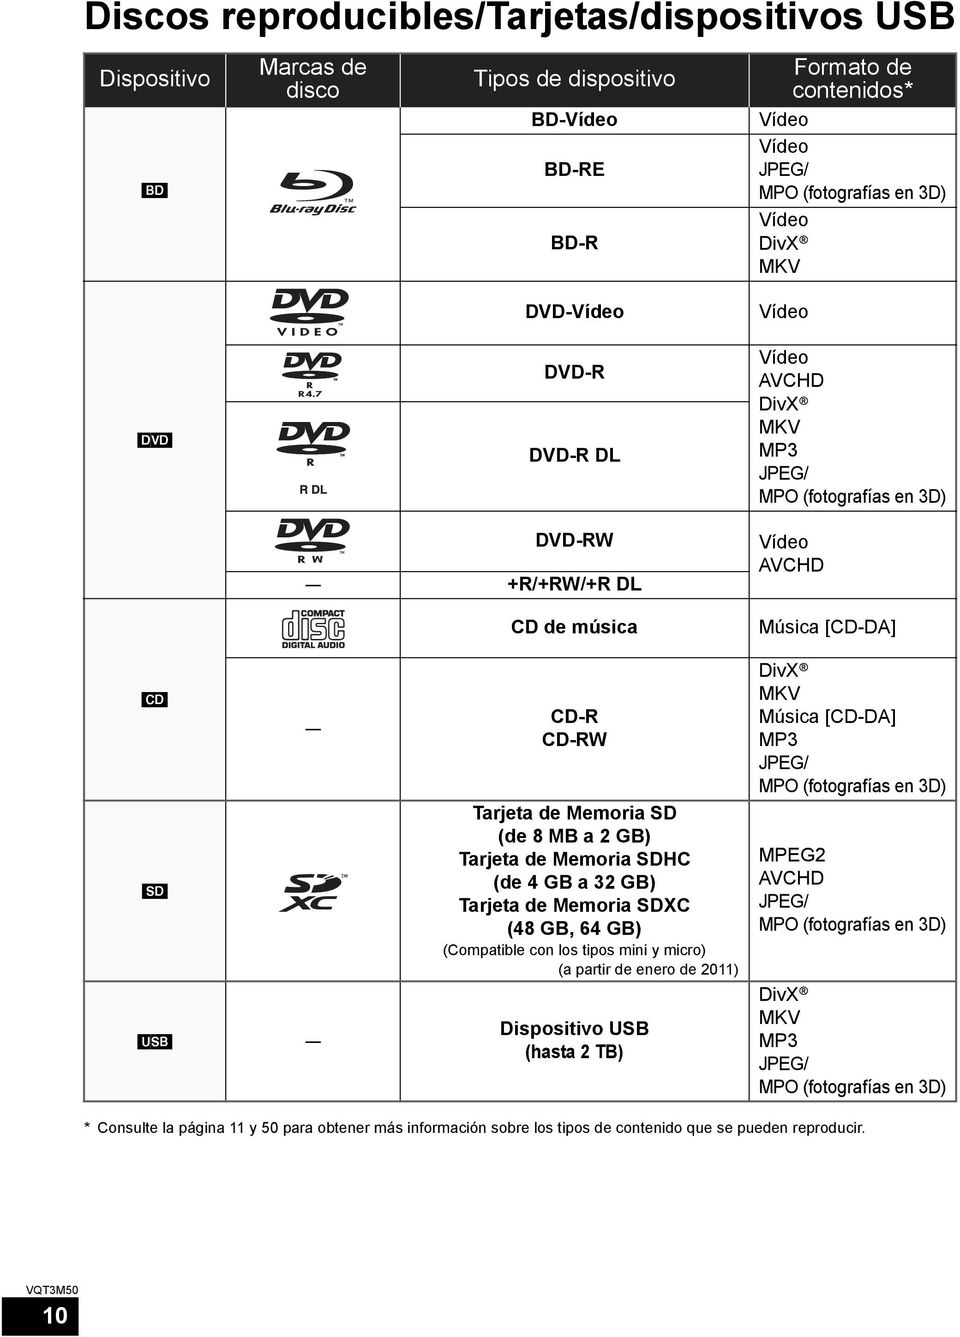 Memoria SD (de 8 MB a 2 GB) Tarjeta de Memoria SDHC (de 4 GB a 32 GB) Tarjeta de Memoria SDXC (48 GB, 64 GB) (Compatible con los tipos mini y micro) (a partir de enero de 2011) Dispositivo USB (hasta